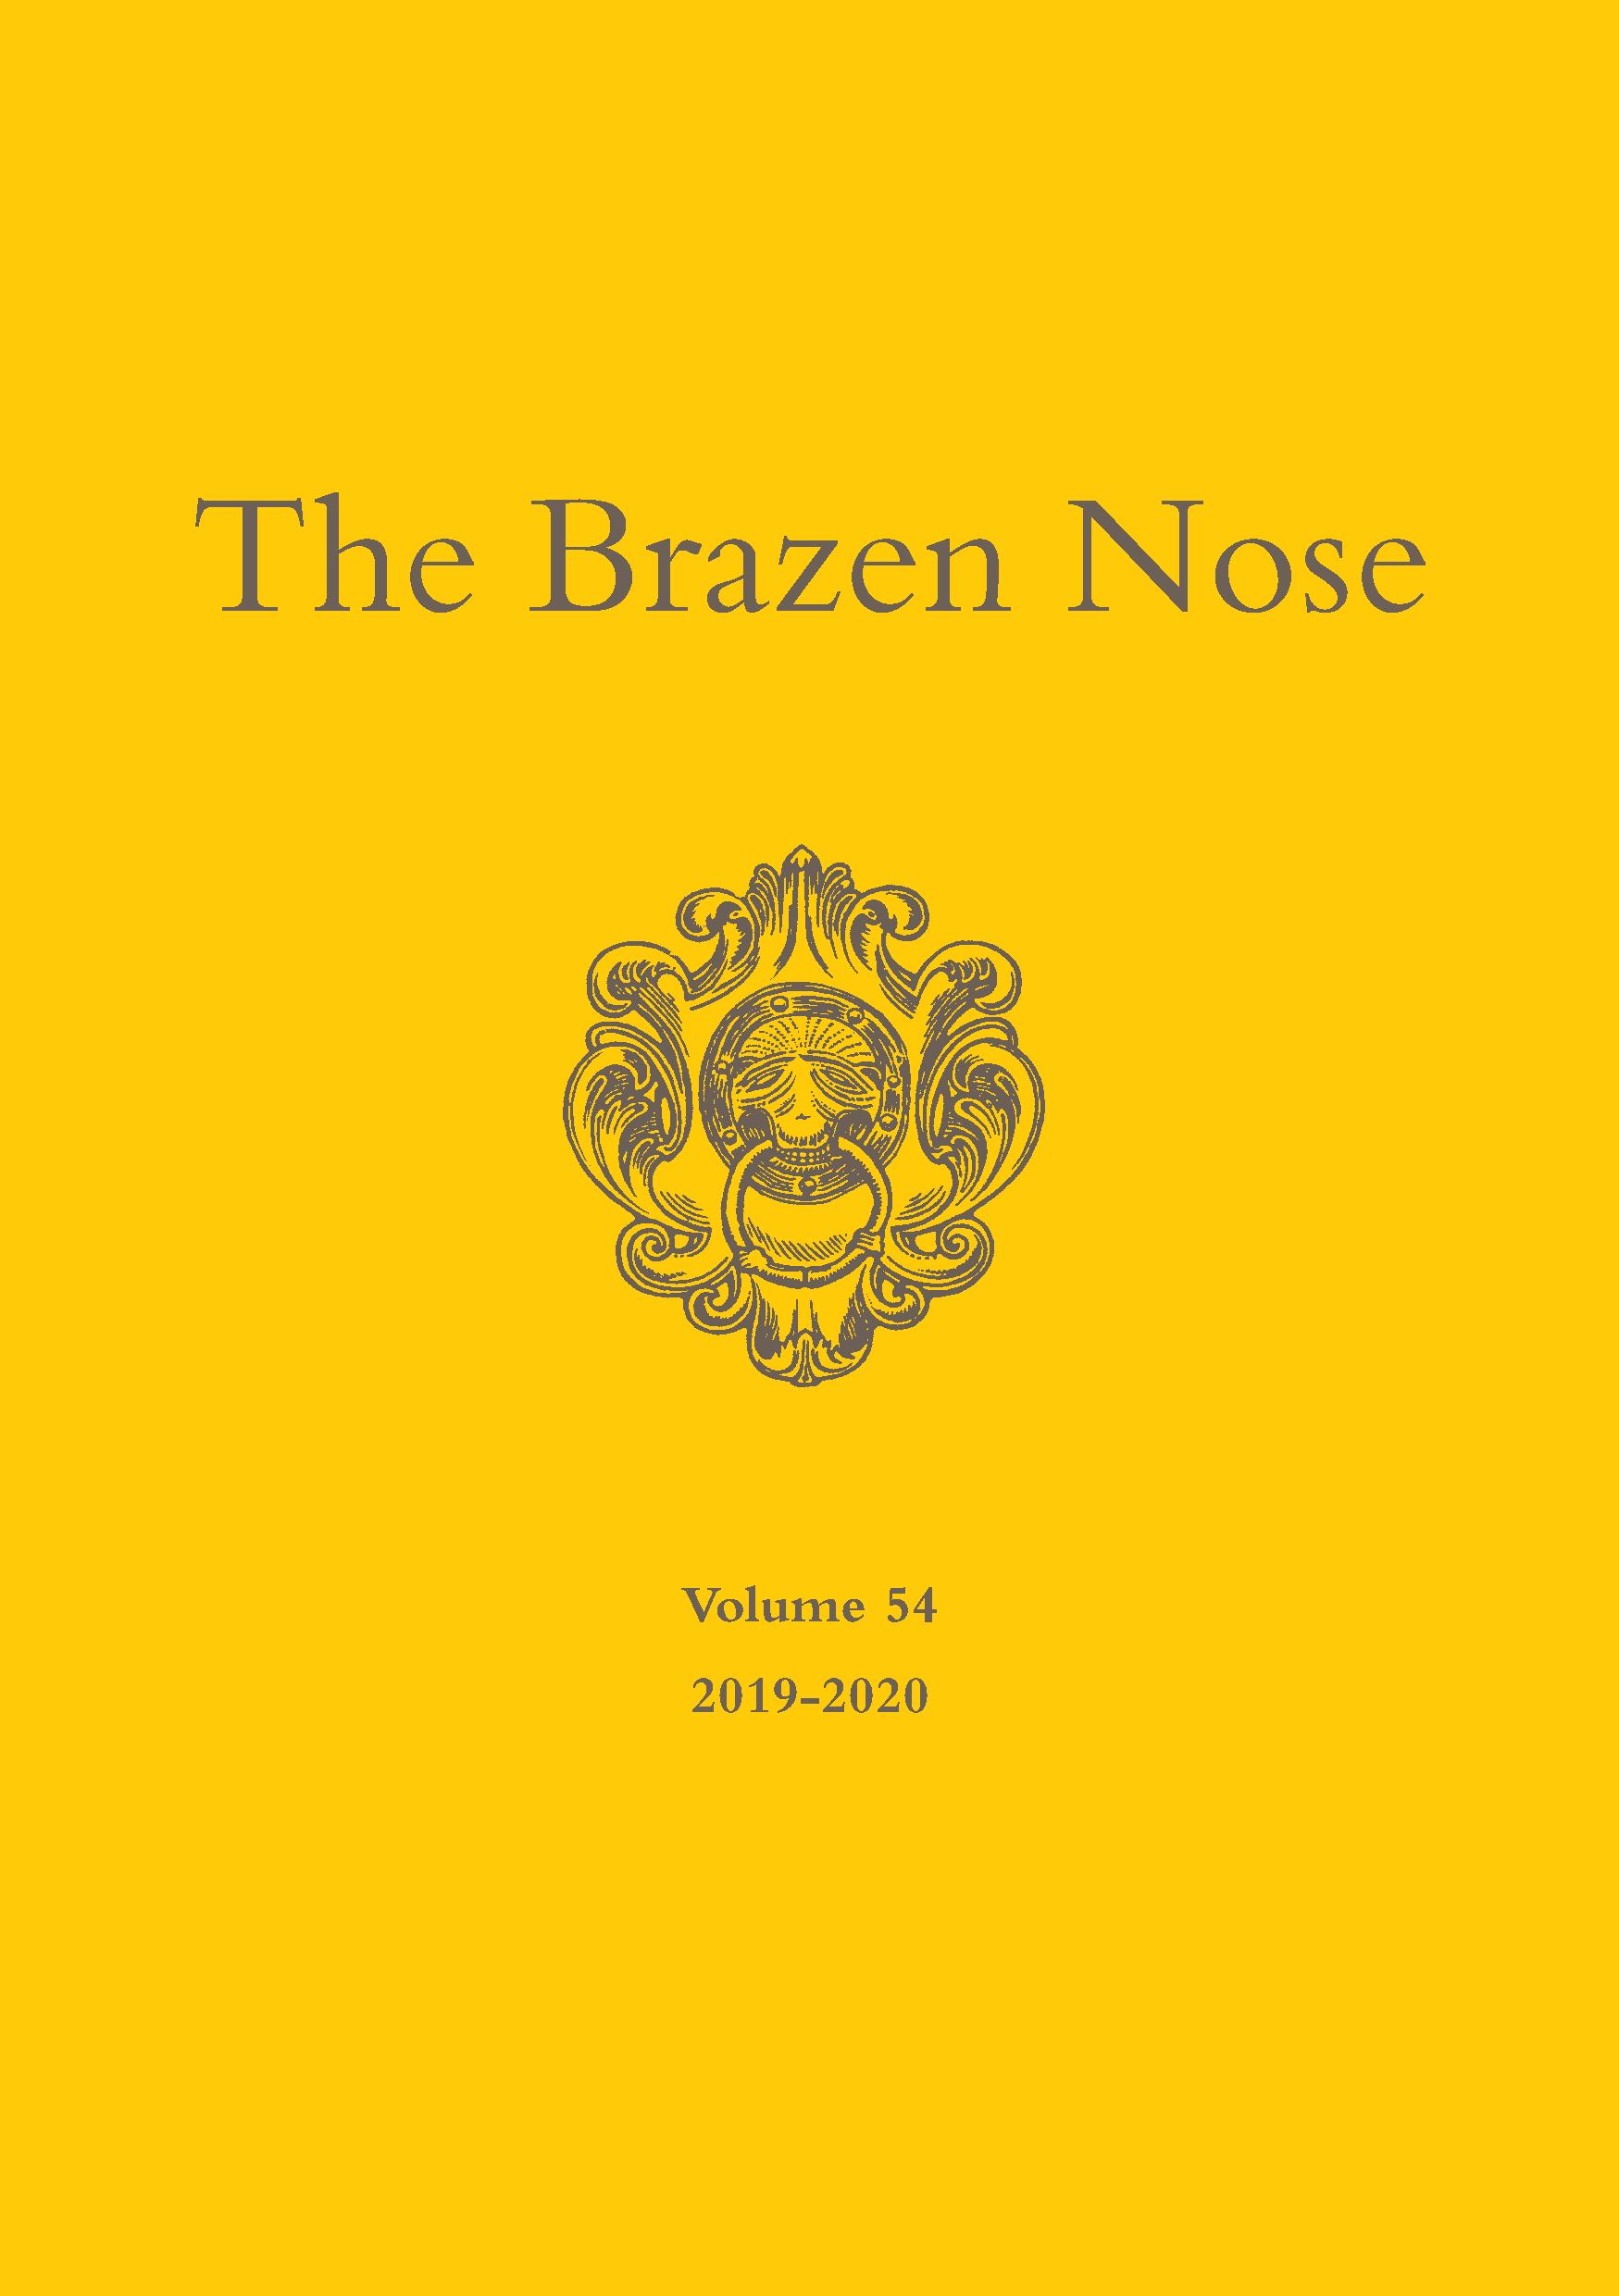 Brazen Nose Vol 53 web quality COVER